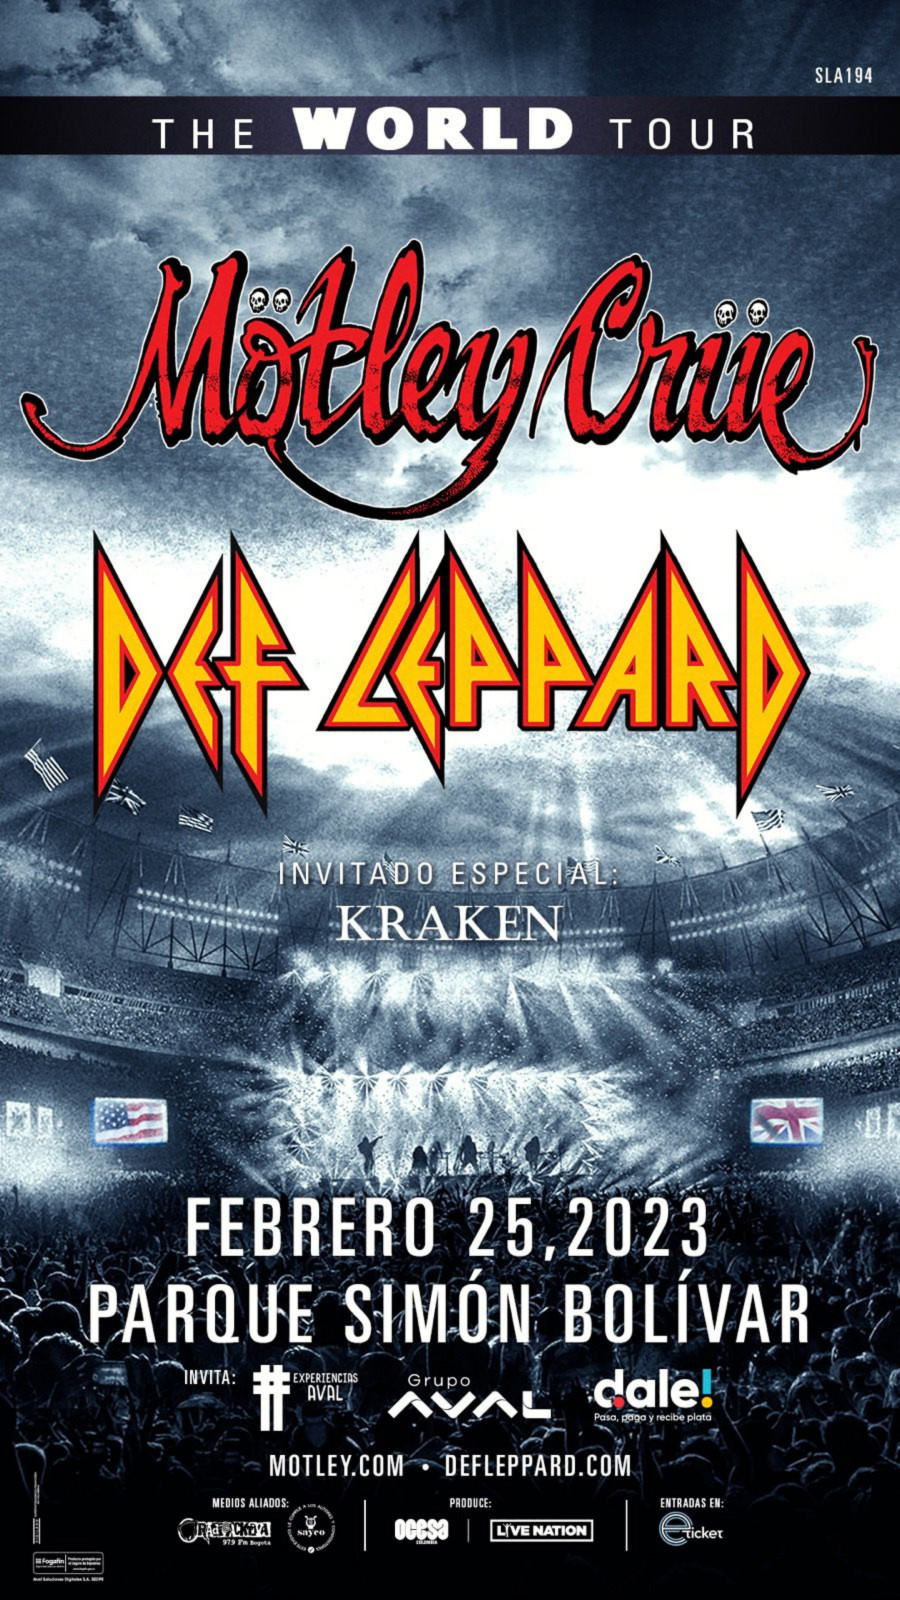 Concierto de Def Leppard y Mötley Crüe en Bogotá: Kraken será el grupo  invitado - Infobae